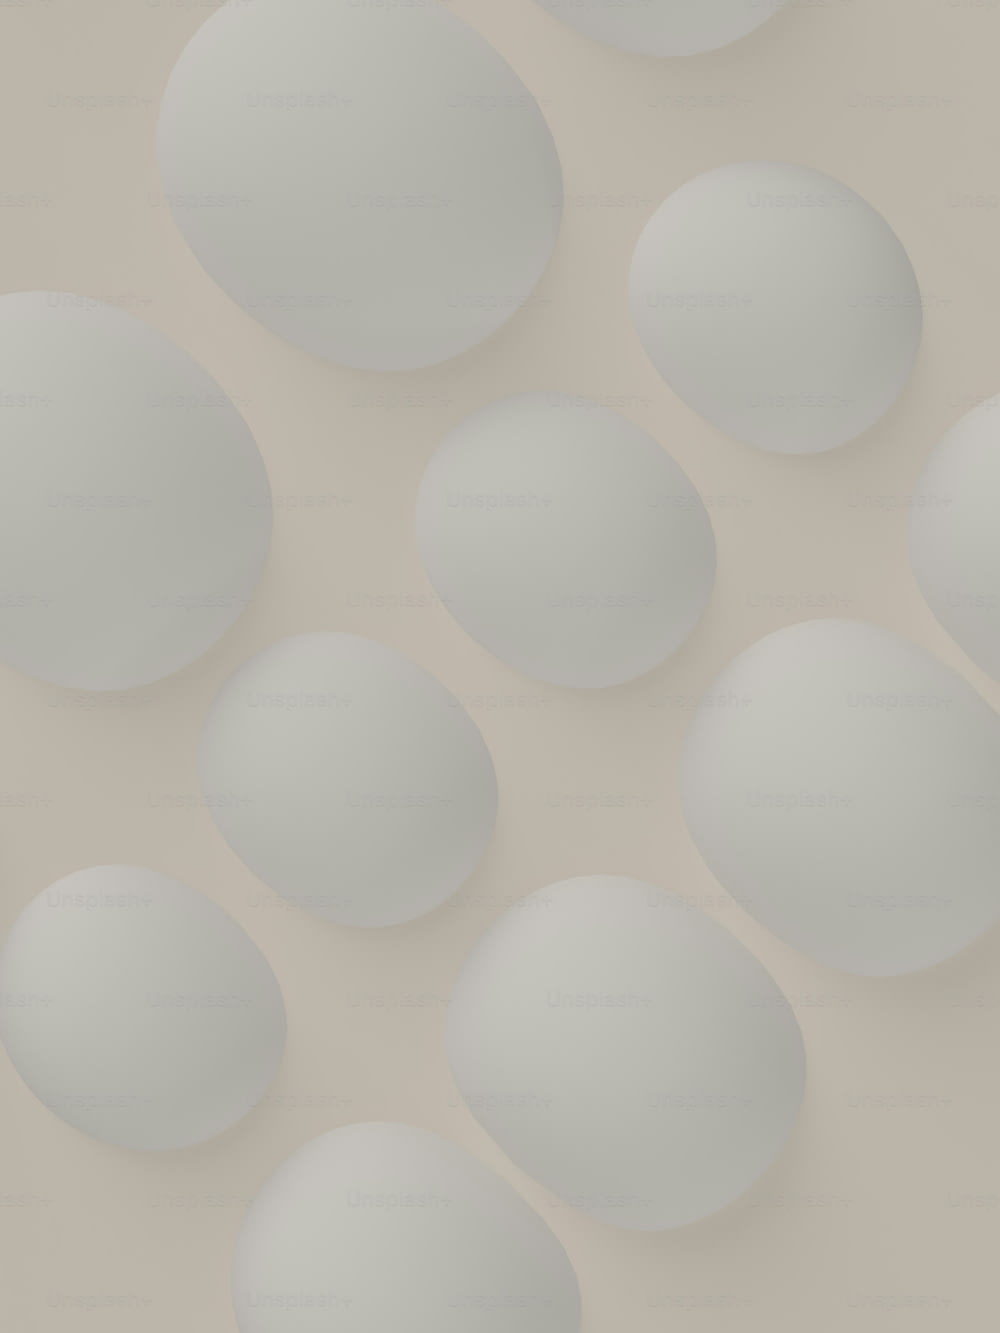 um monte de ovos brancos sentados em cima de uma mesa